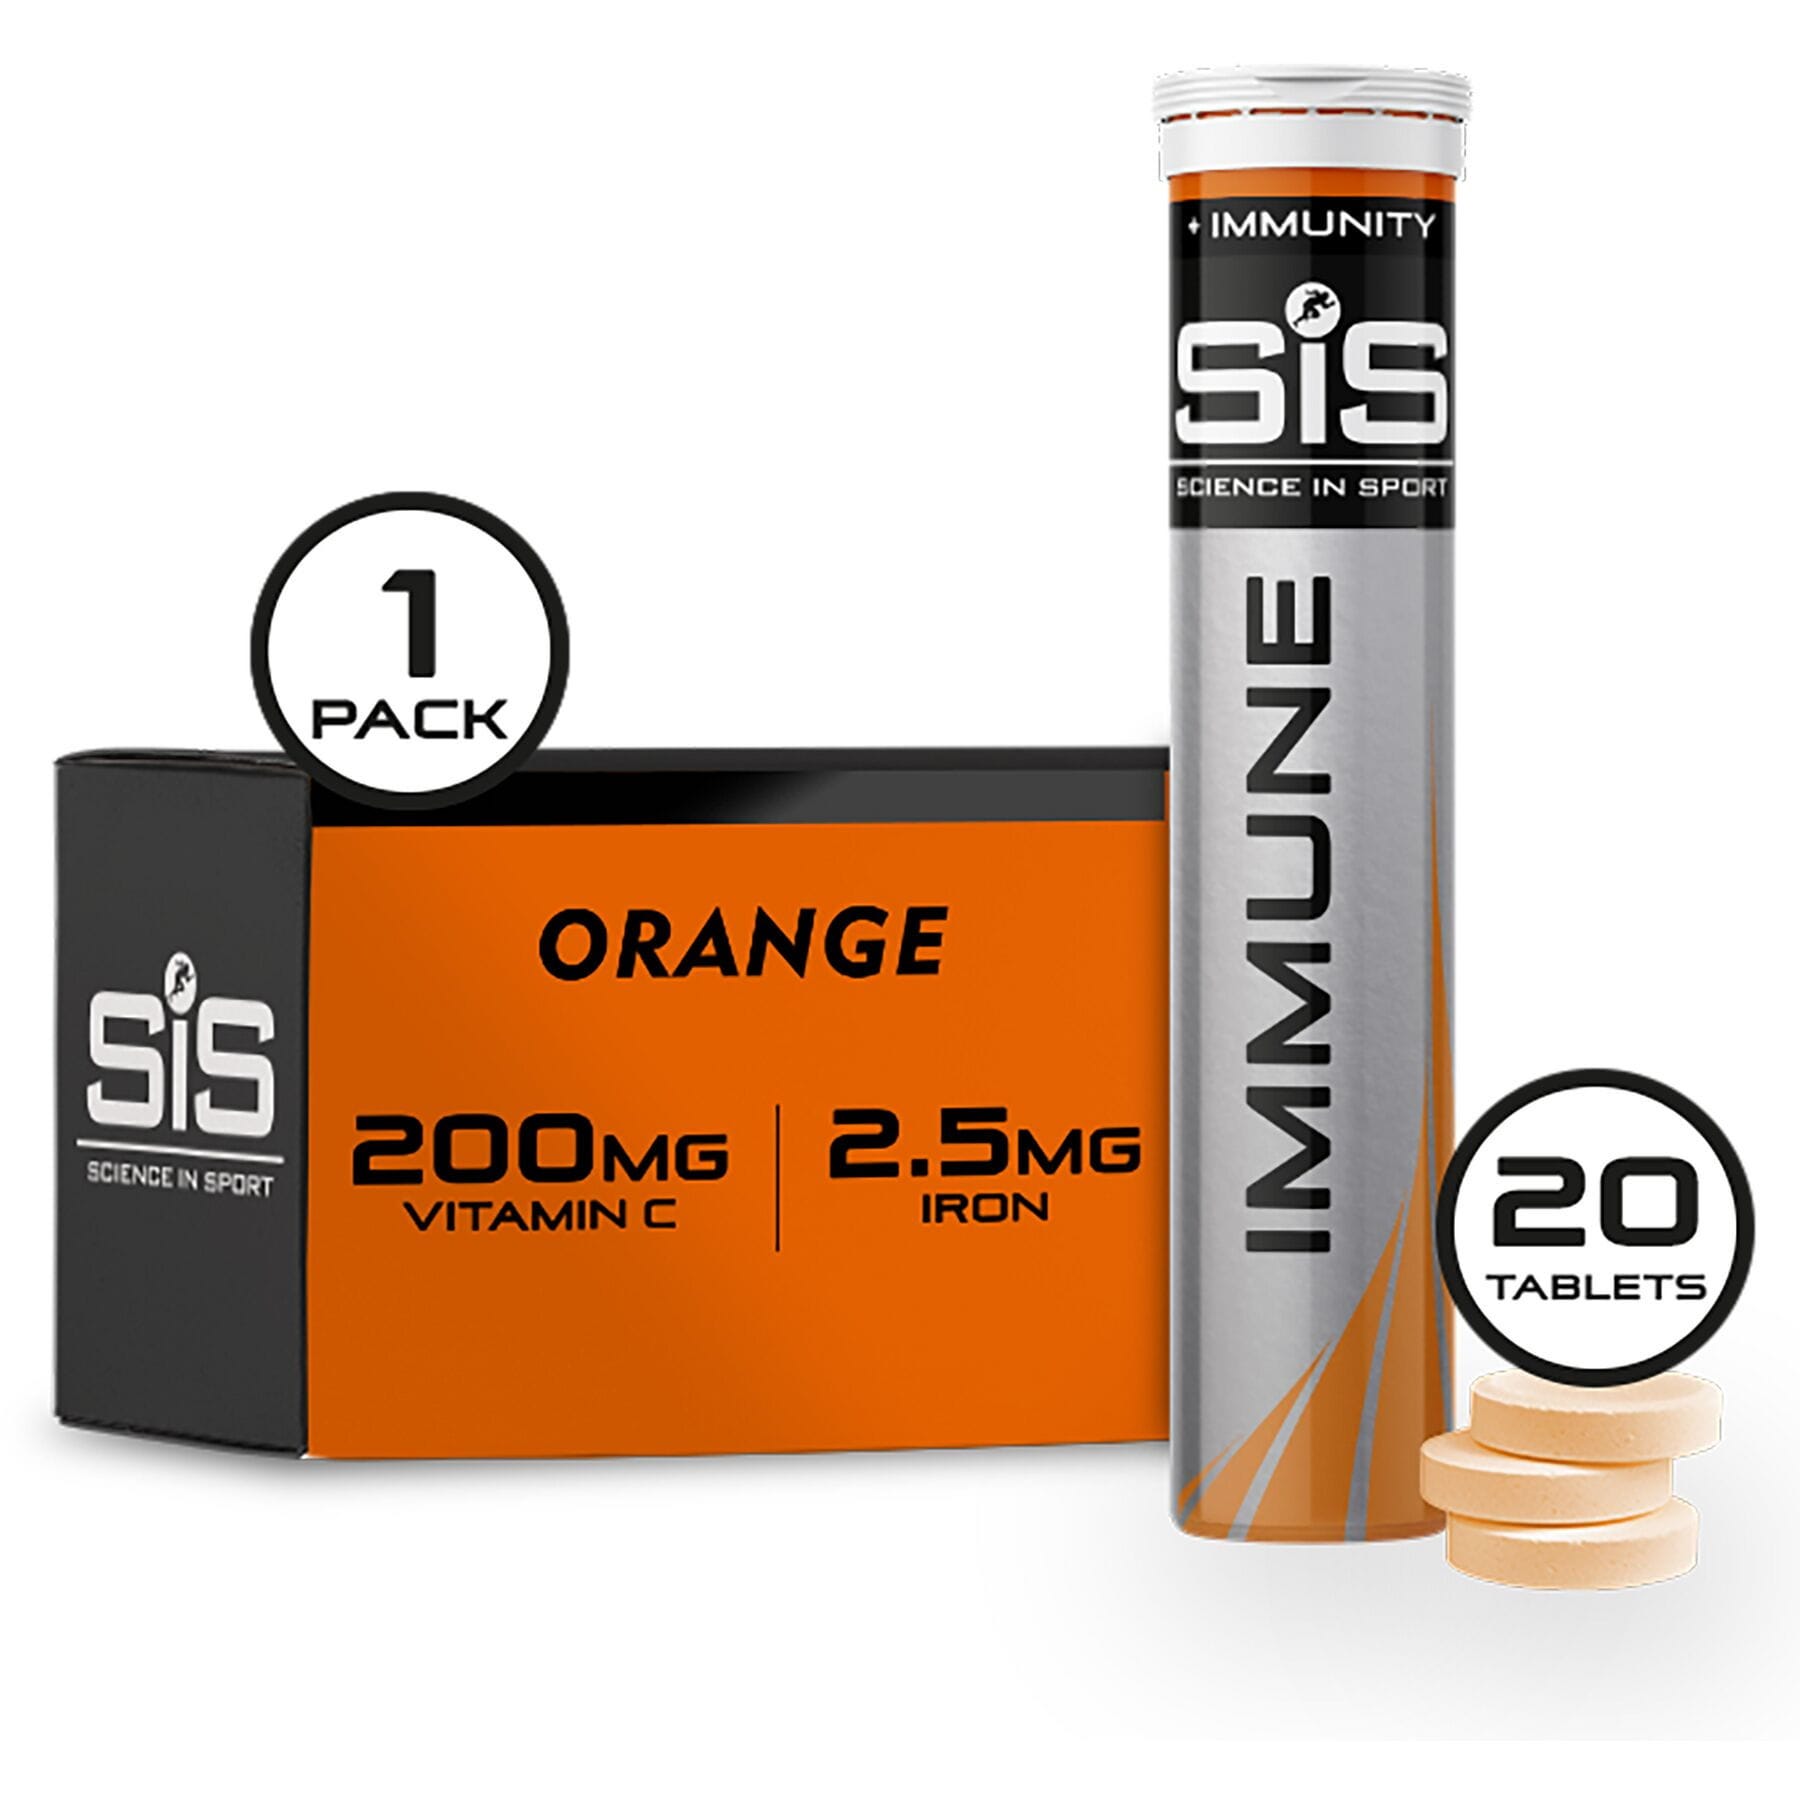 Science In Sport GO Immune Hydro Tablet - 1 tube - orange